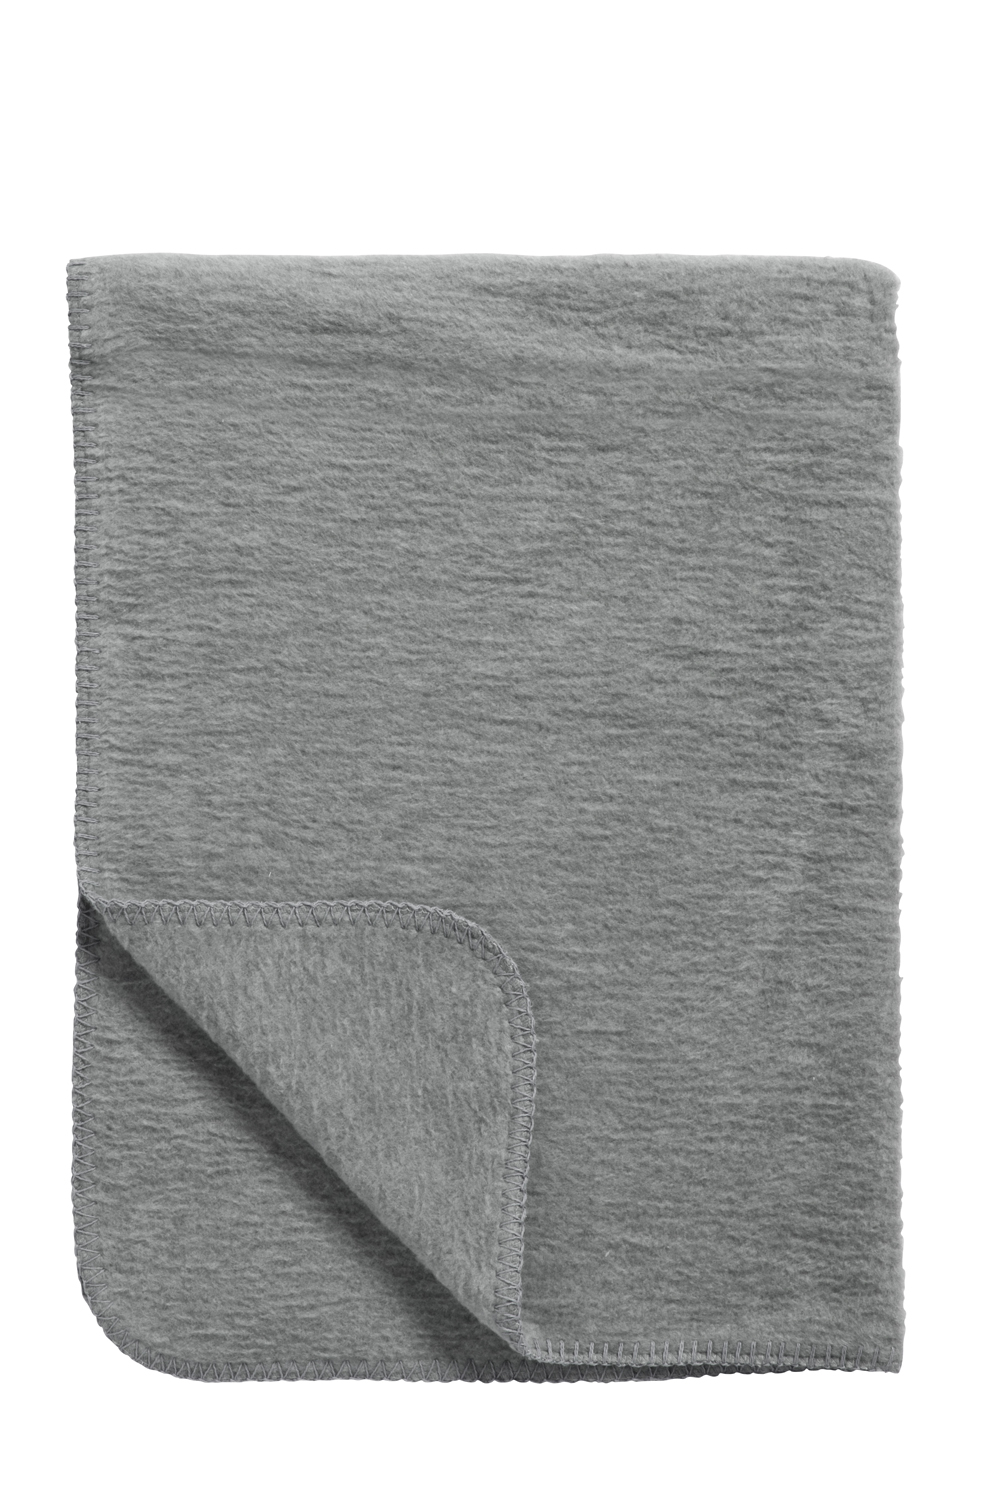 Cot bed blanket Uni - grey - 100x150cm